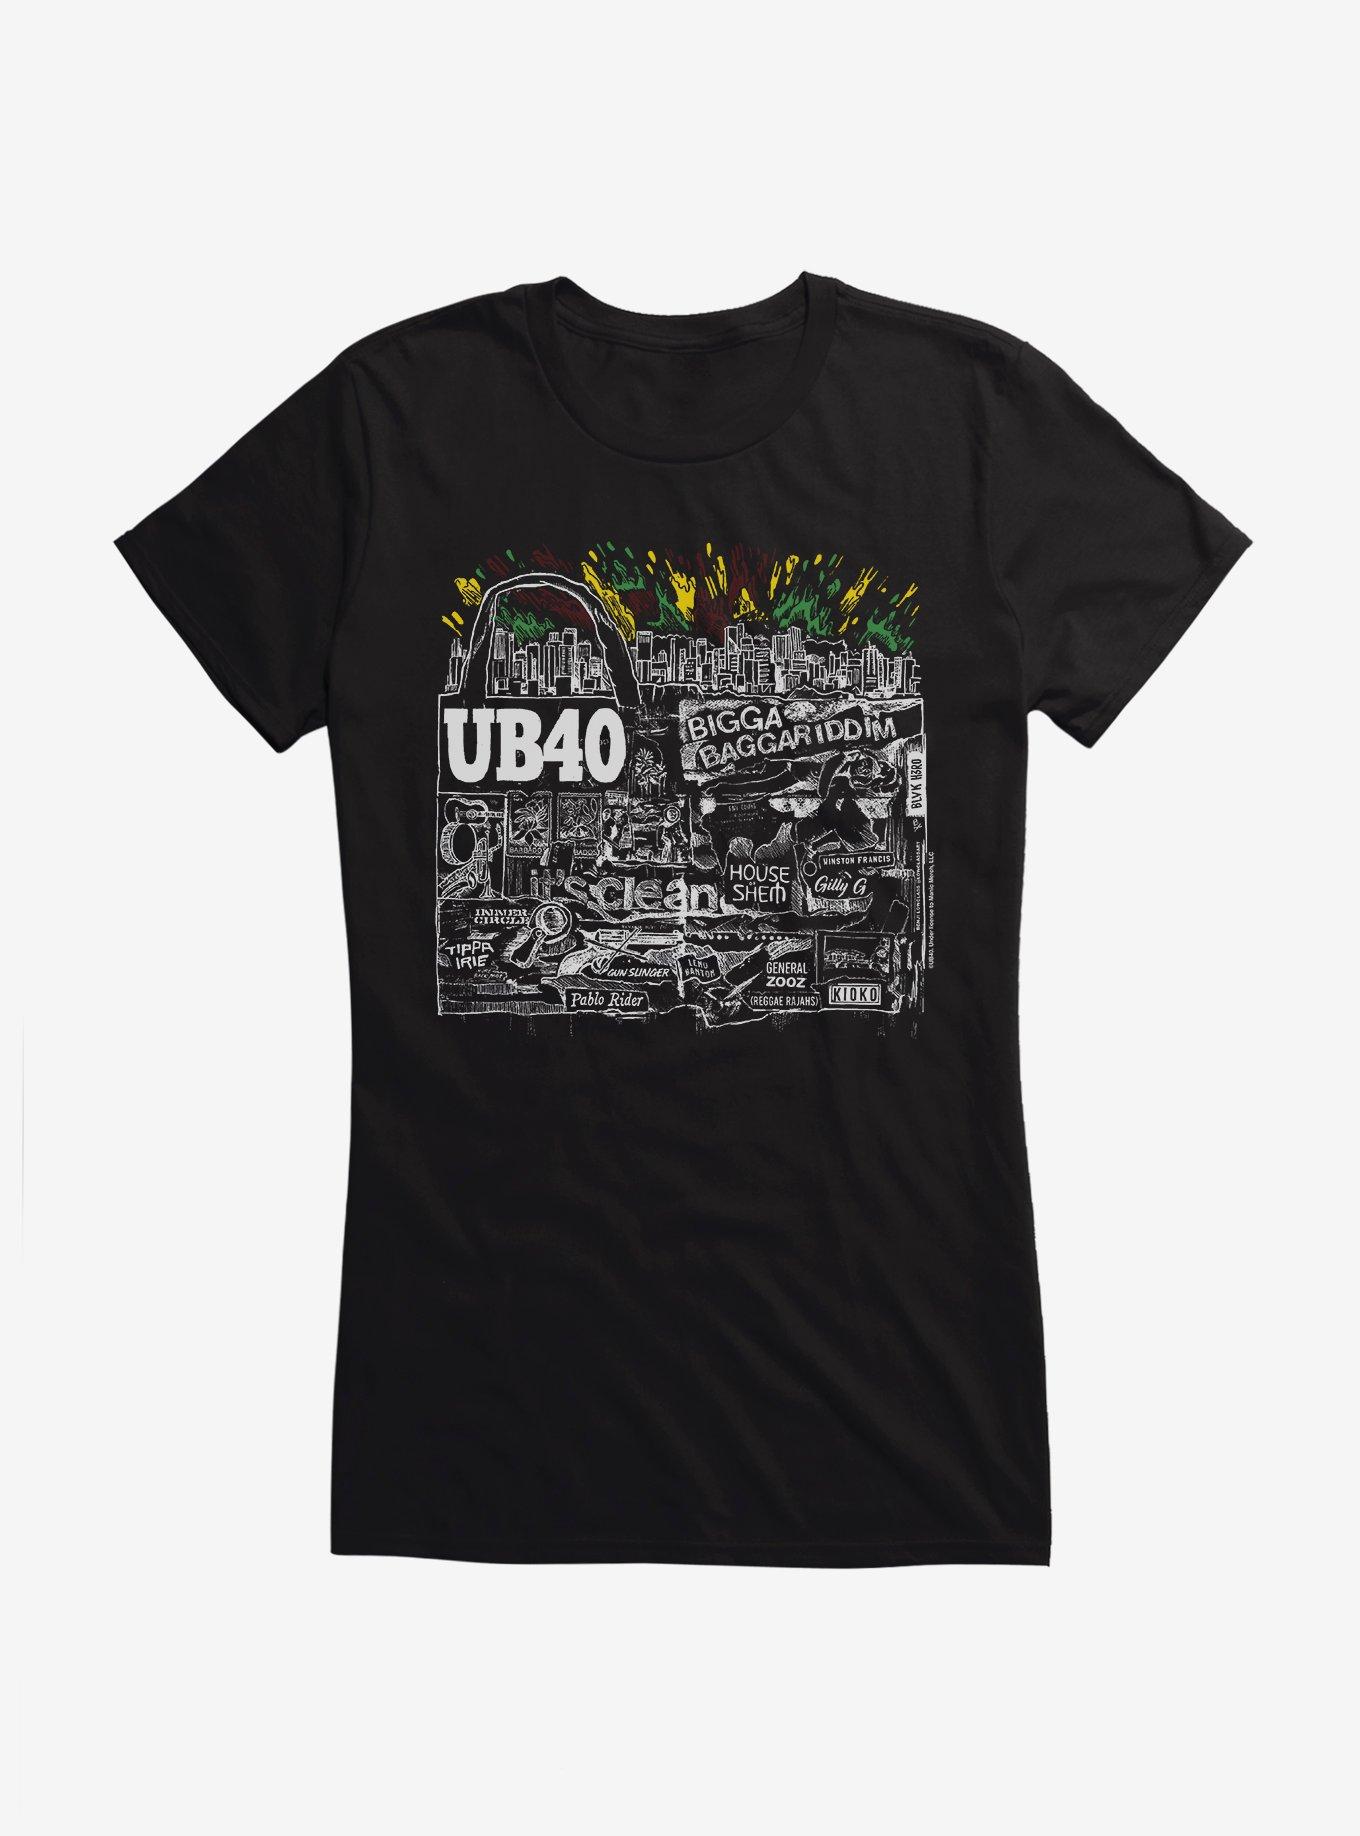 UB40 Bigga Baggariddim Girls T-Shirt, BLACK, hi-res